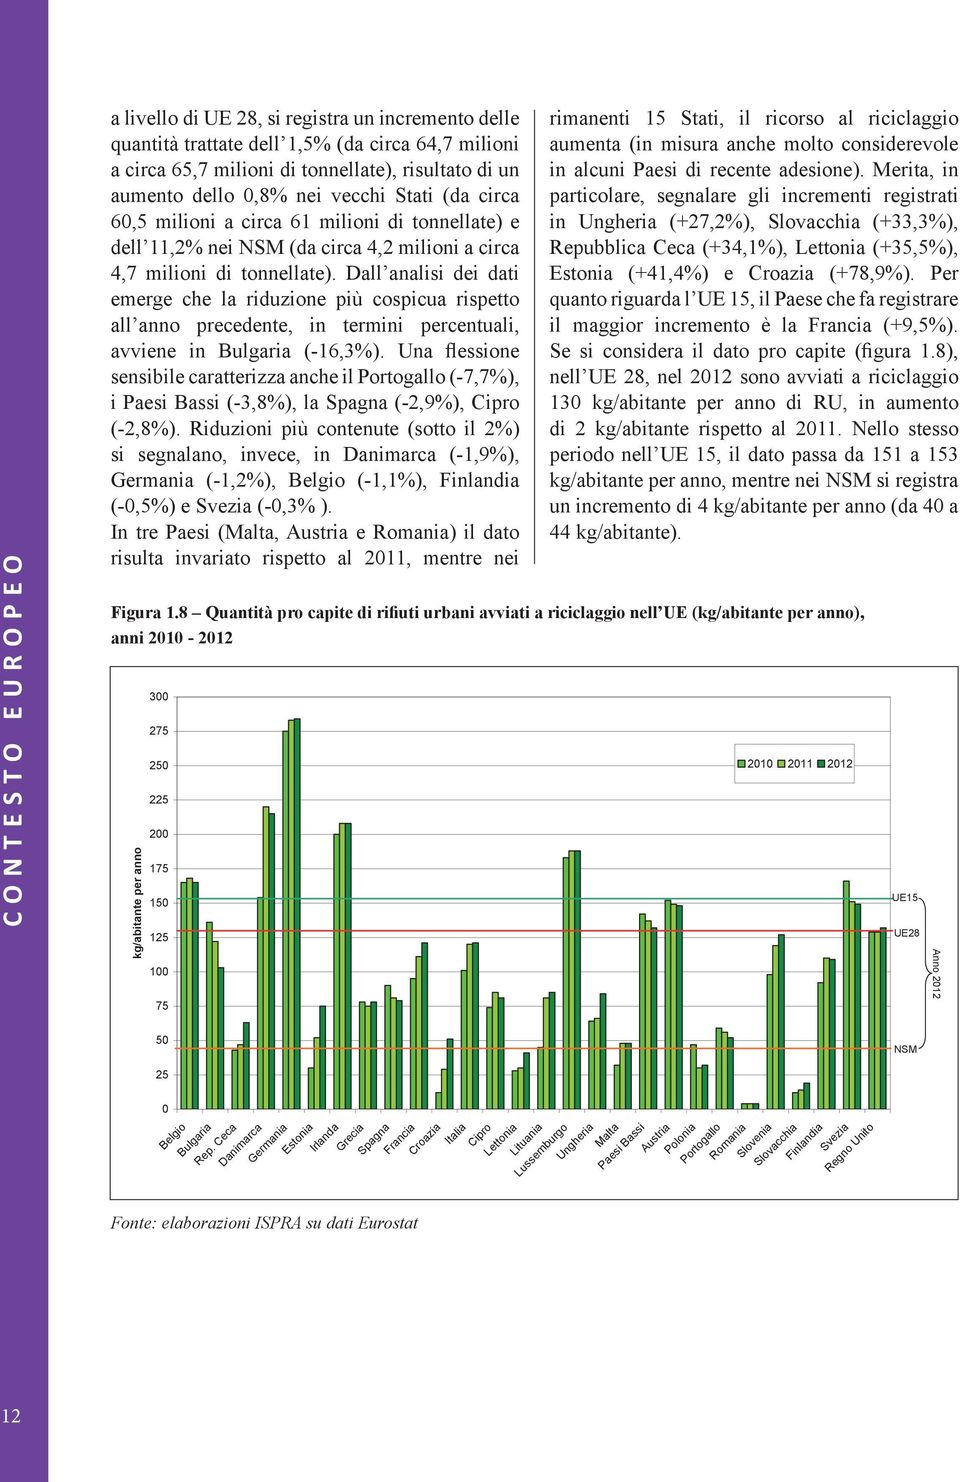 Dall analisi dei dati emerge che la riduzione più cospicua rispetto all anno precedente, in termini percentuali, avviene in Bulgaria (-16,3%).